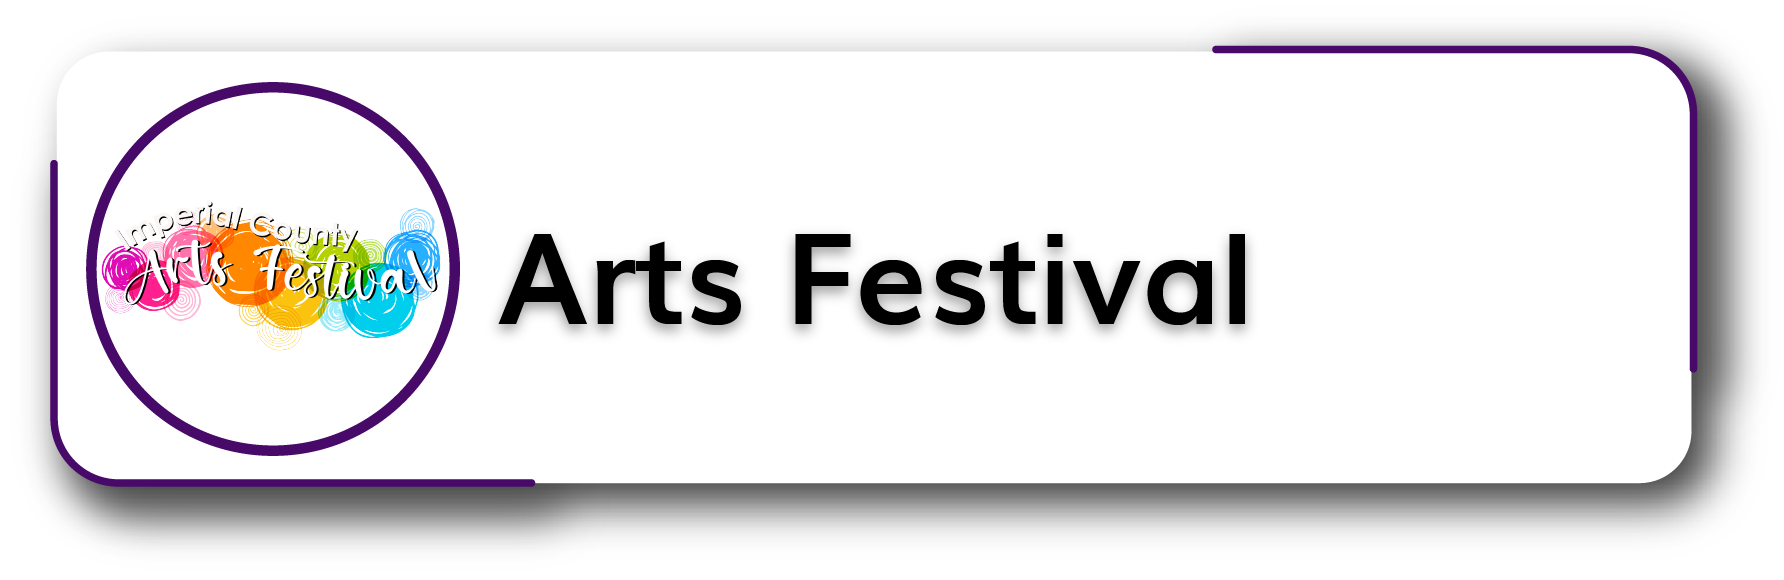 Arts Festival Button